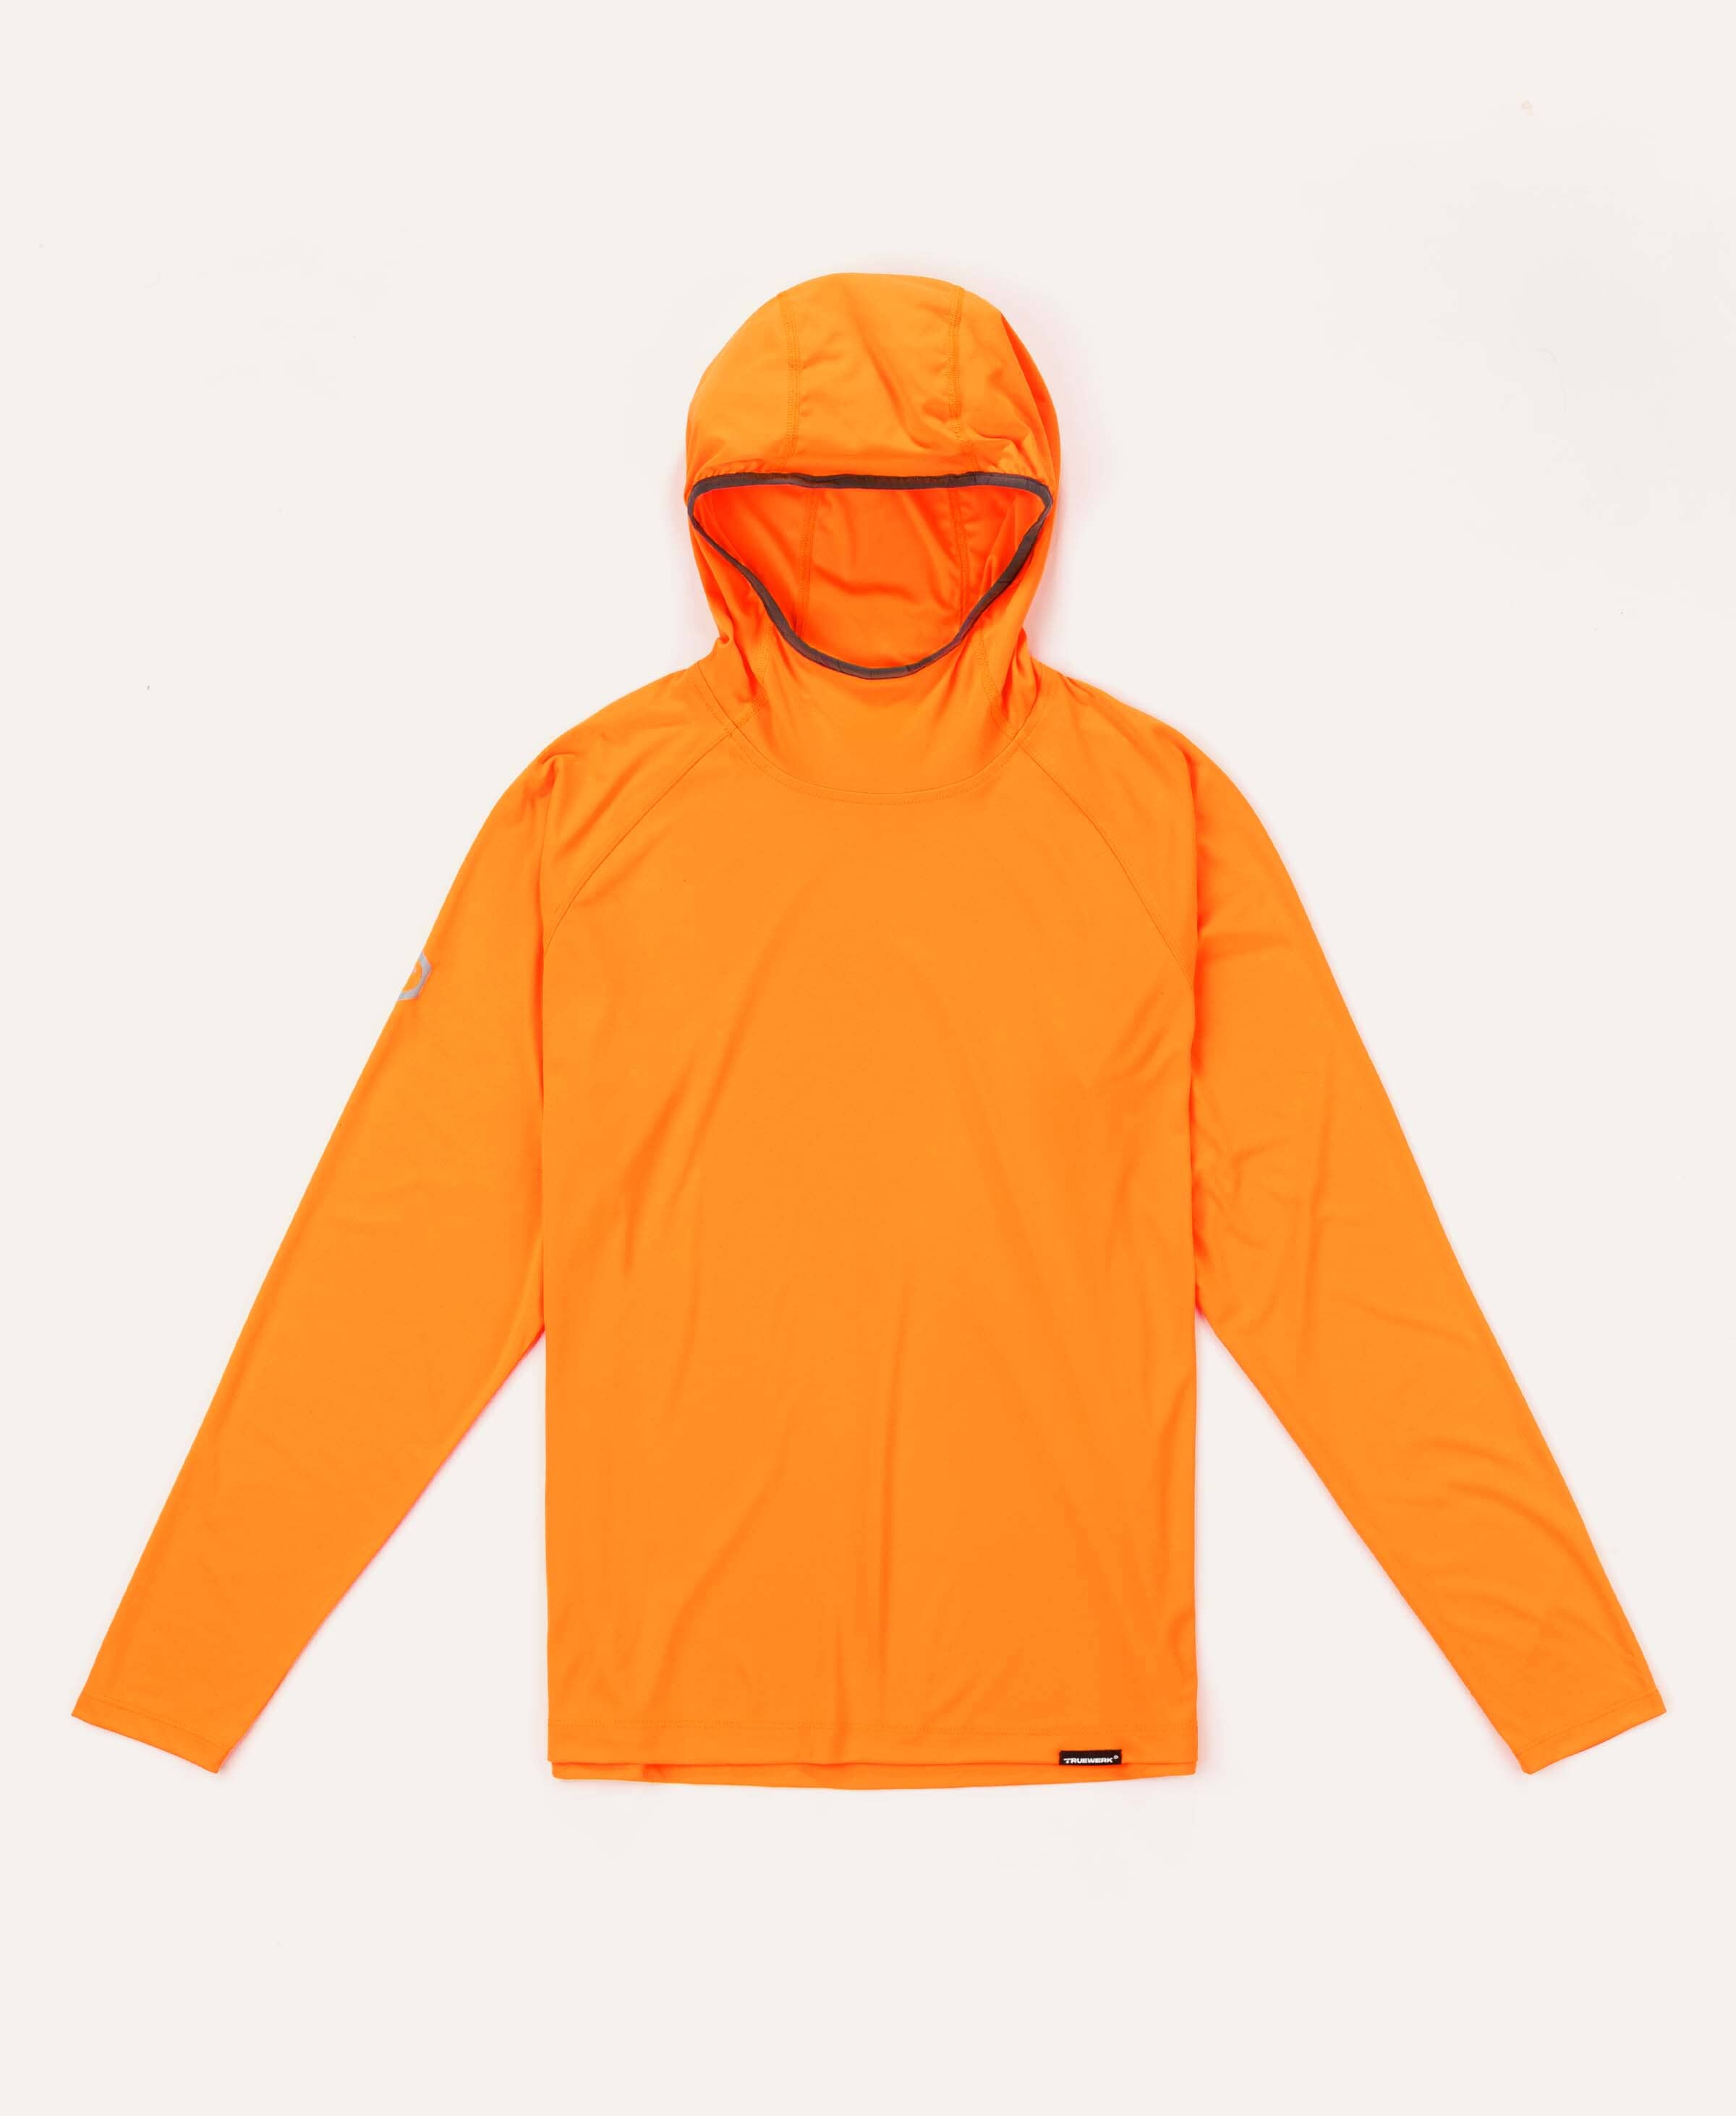 B1 Sun Hoodie - Men's Fit Truewerk #color_viz orange